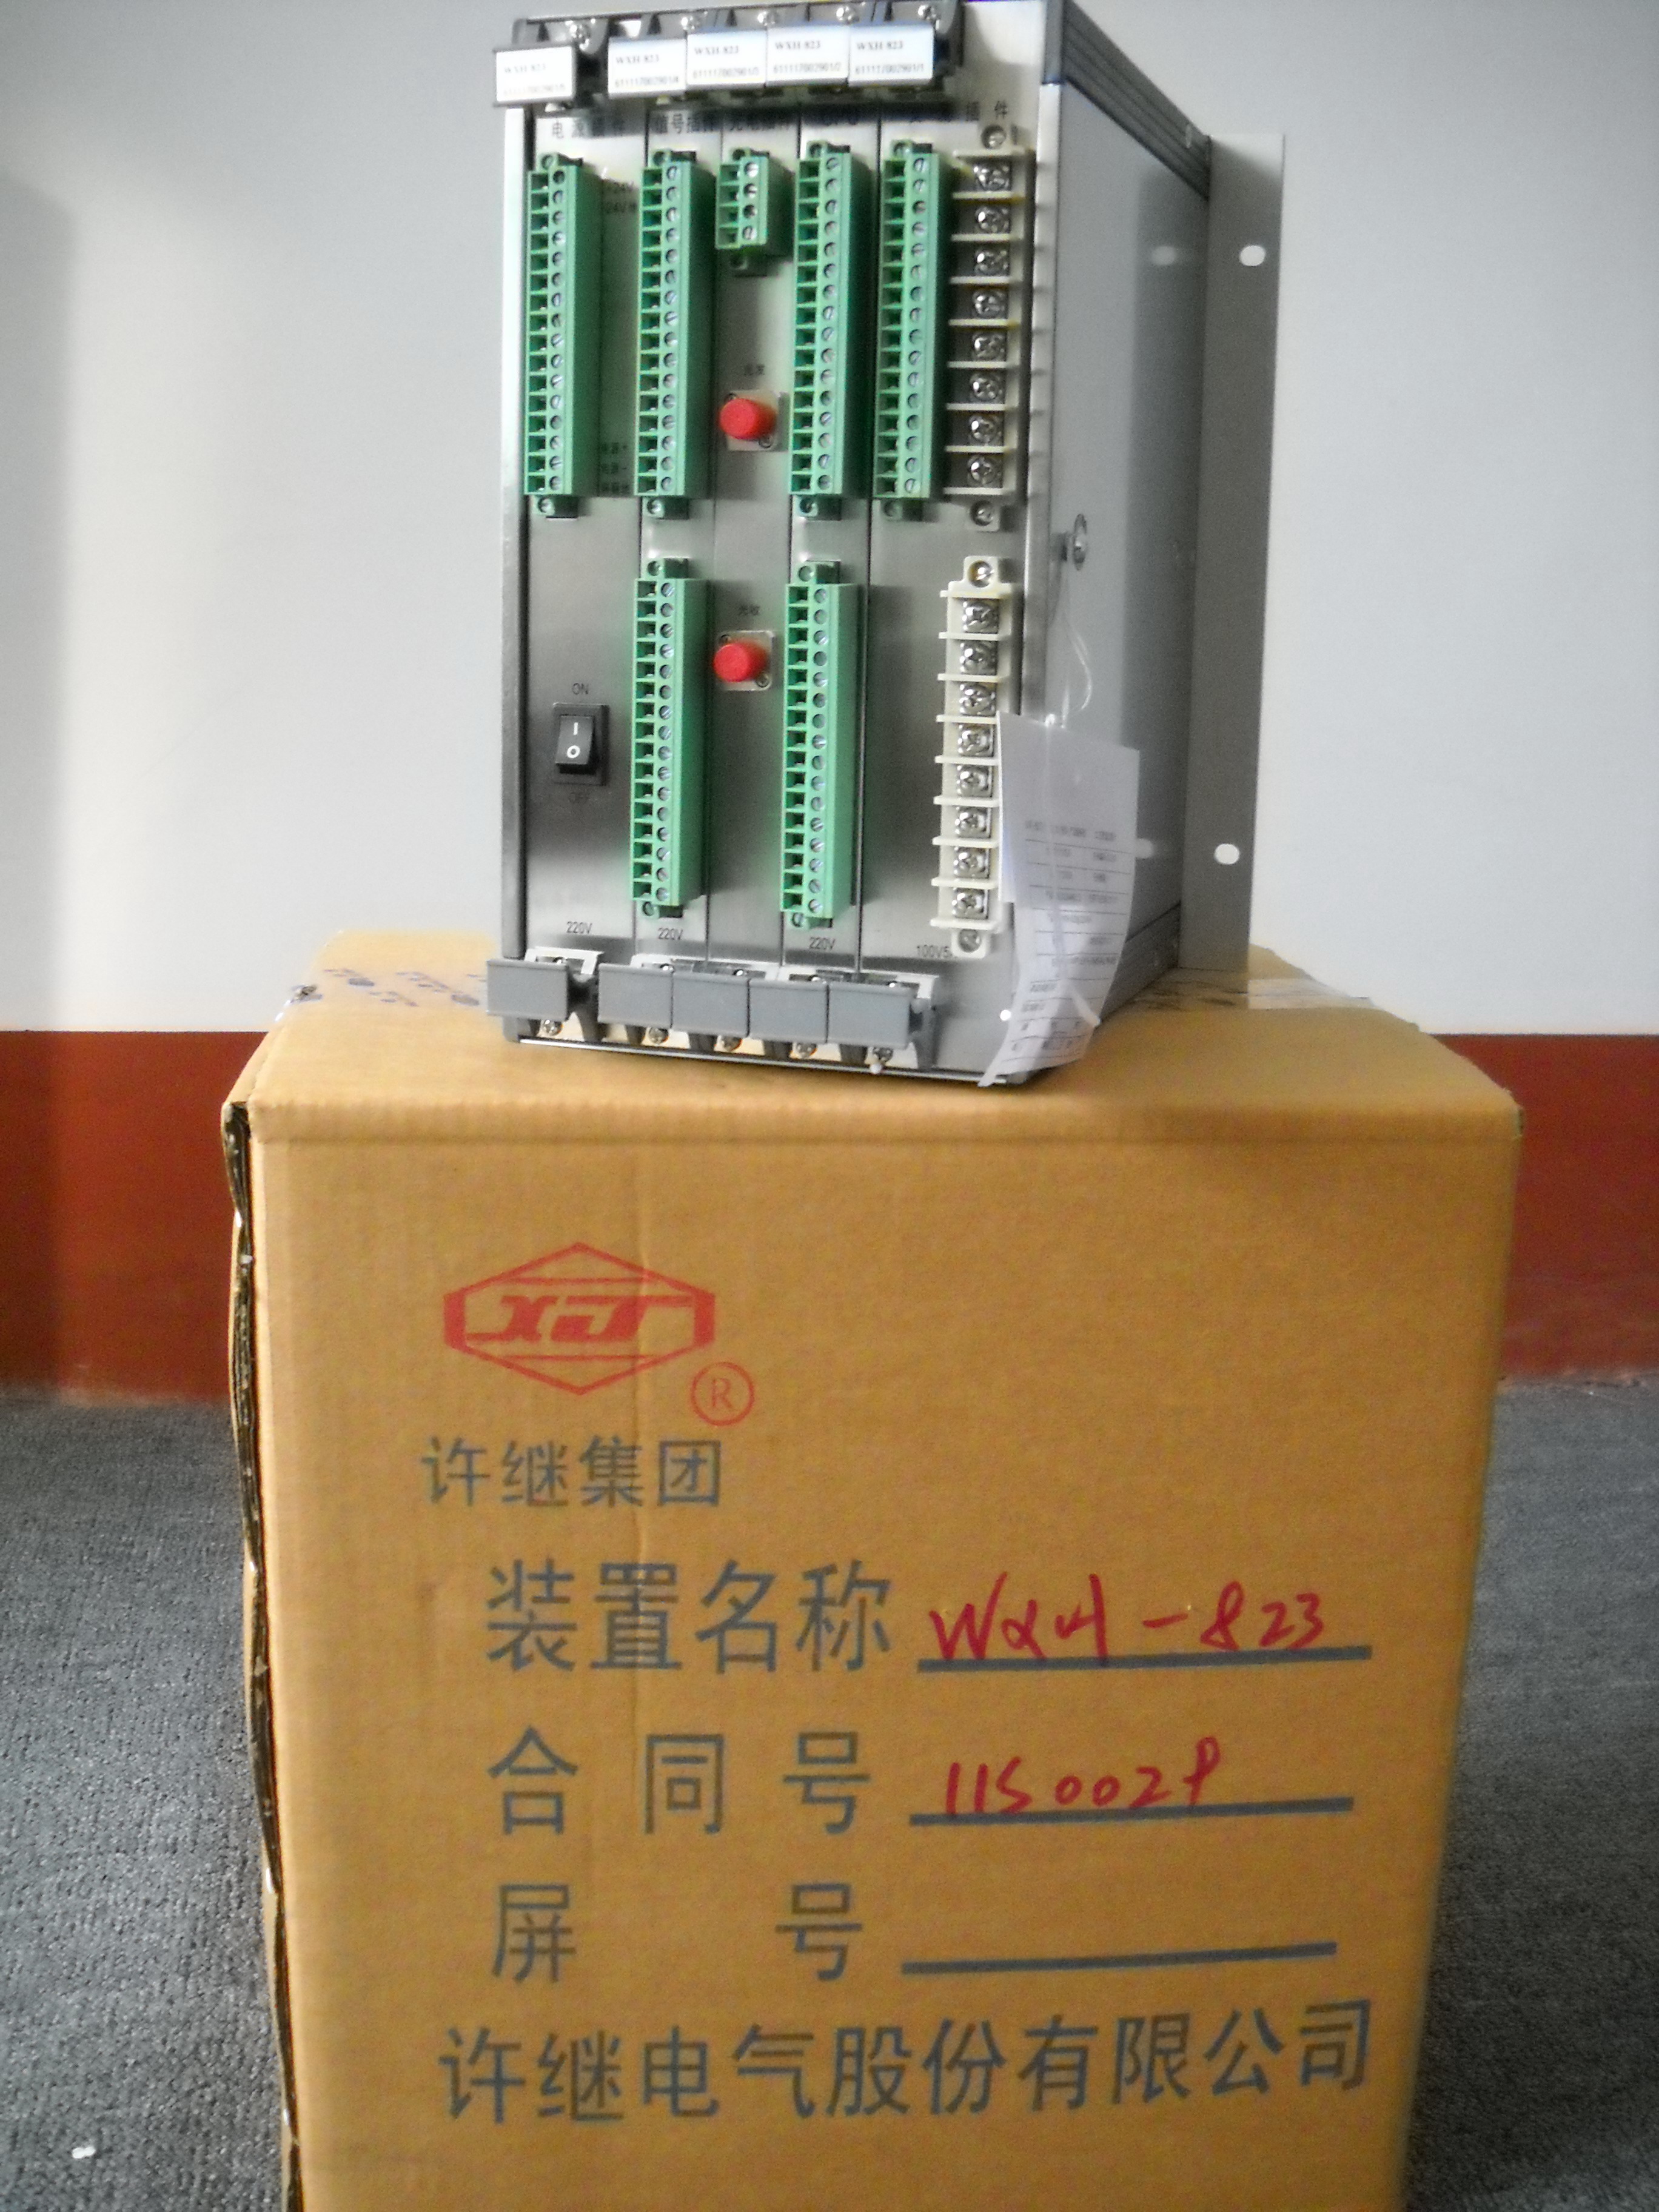 许昌市WXH-823微机线路保护测控装厂家